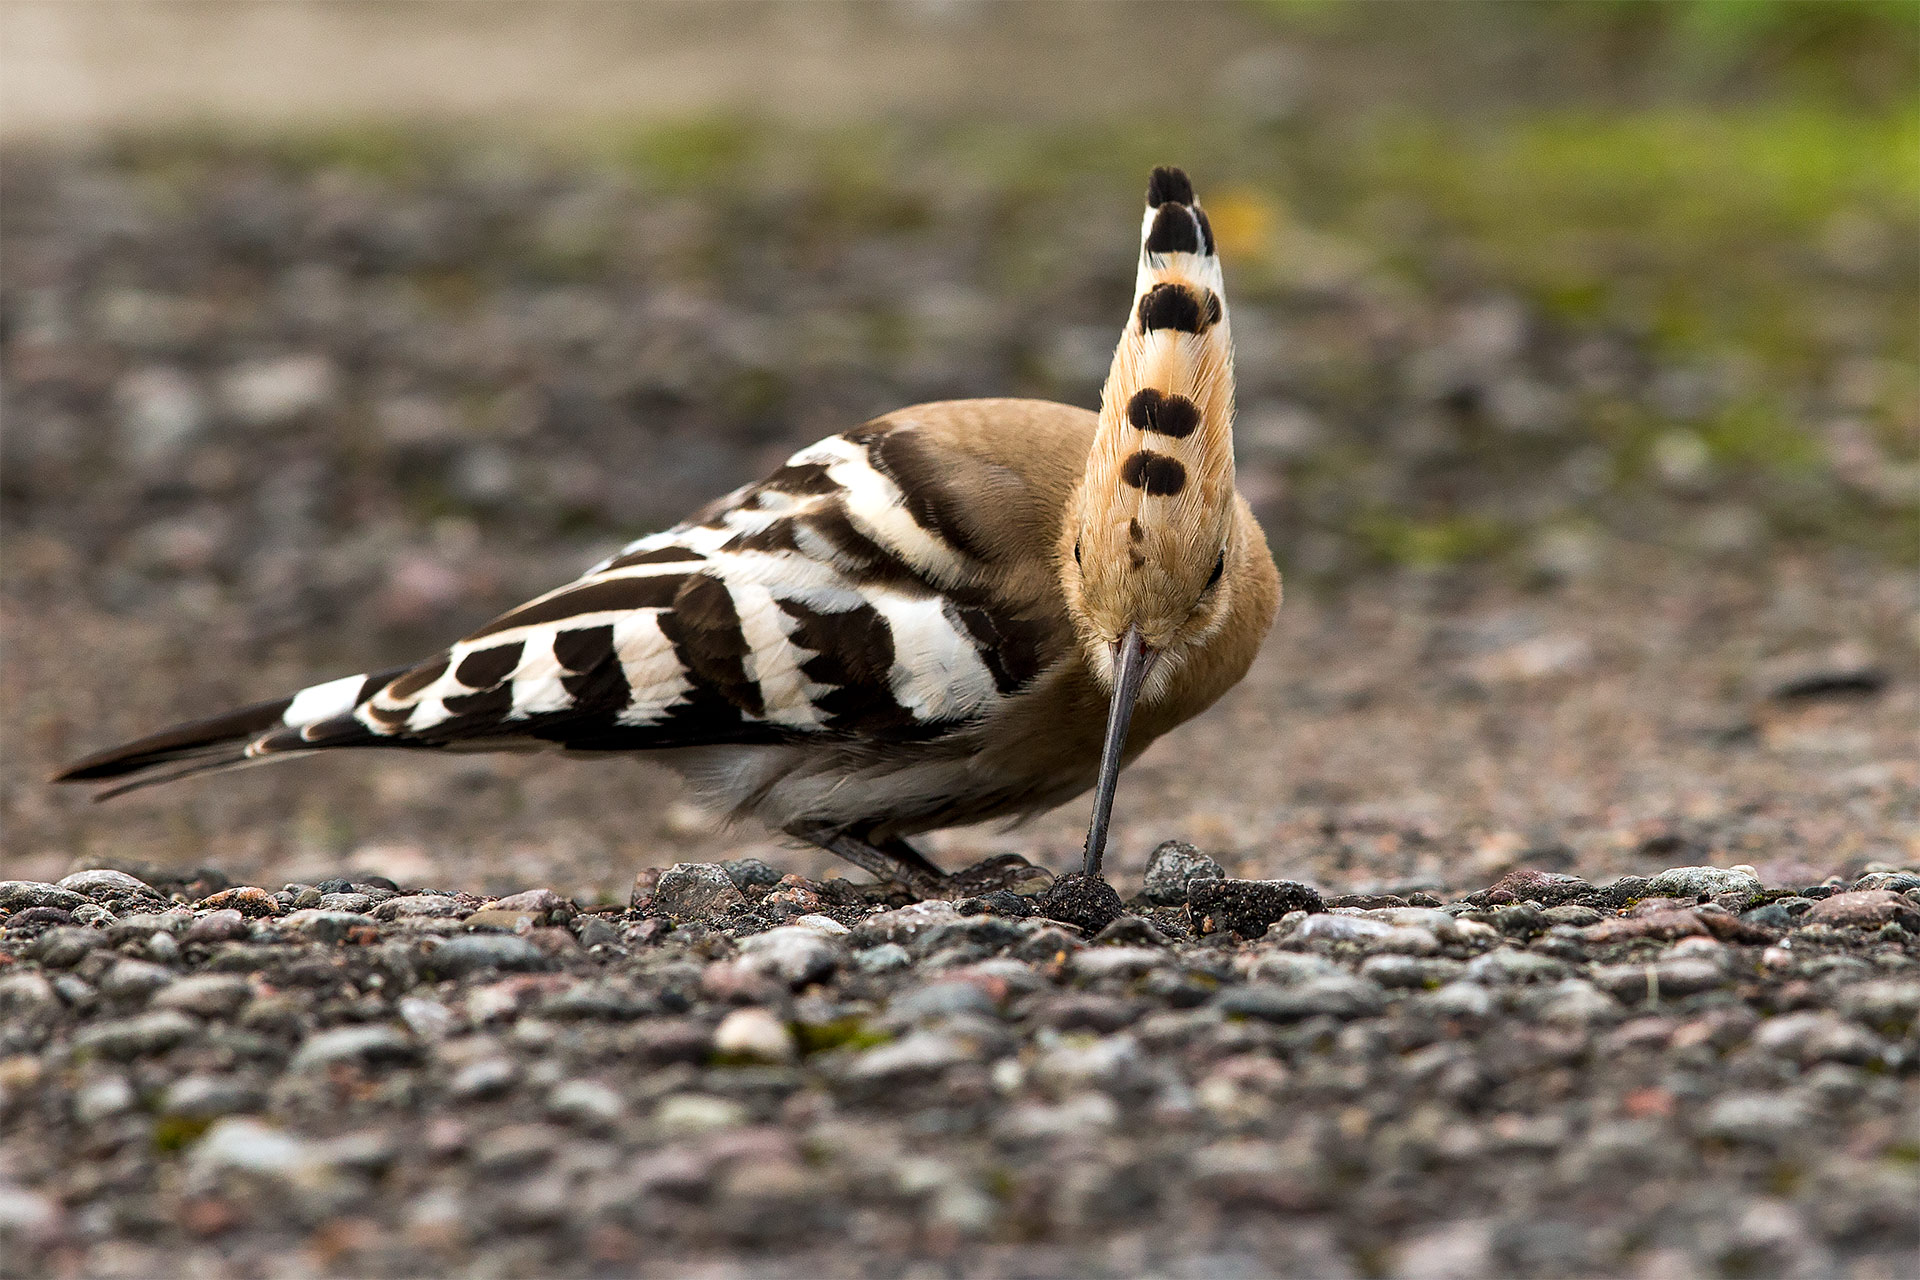 Härfågel söker föda bland grus och stenar av naturfotograf Hasse Andersson